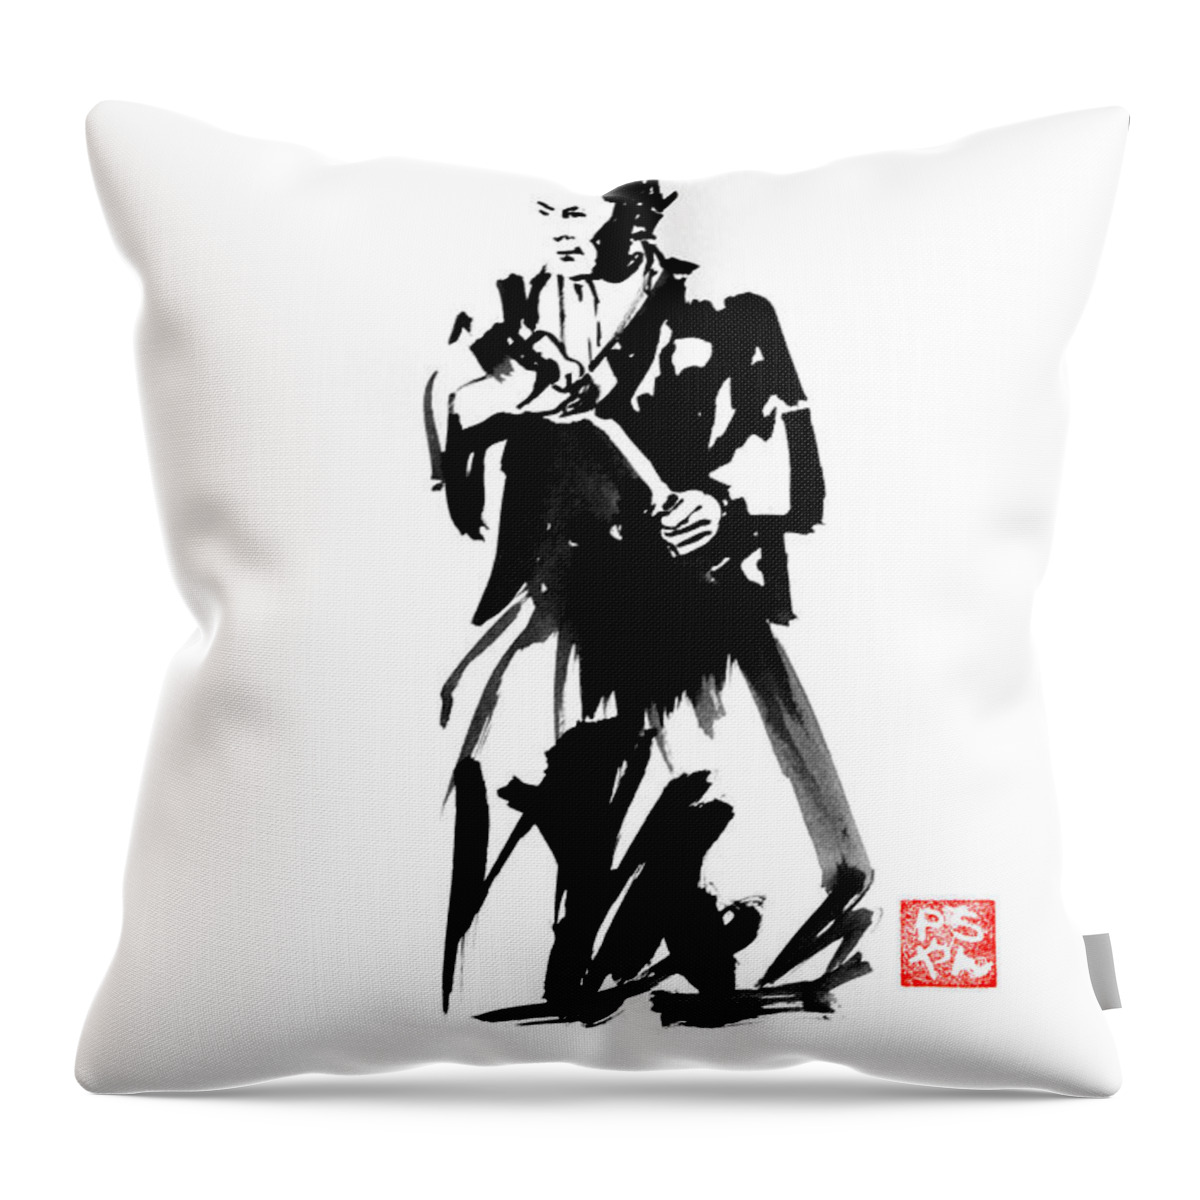 Yojimbo Throw Pillow featuring the painting Yojimbo by Pechane Sumie